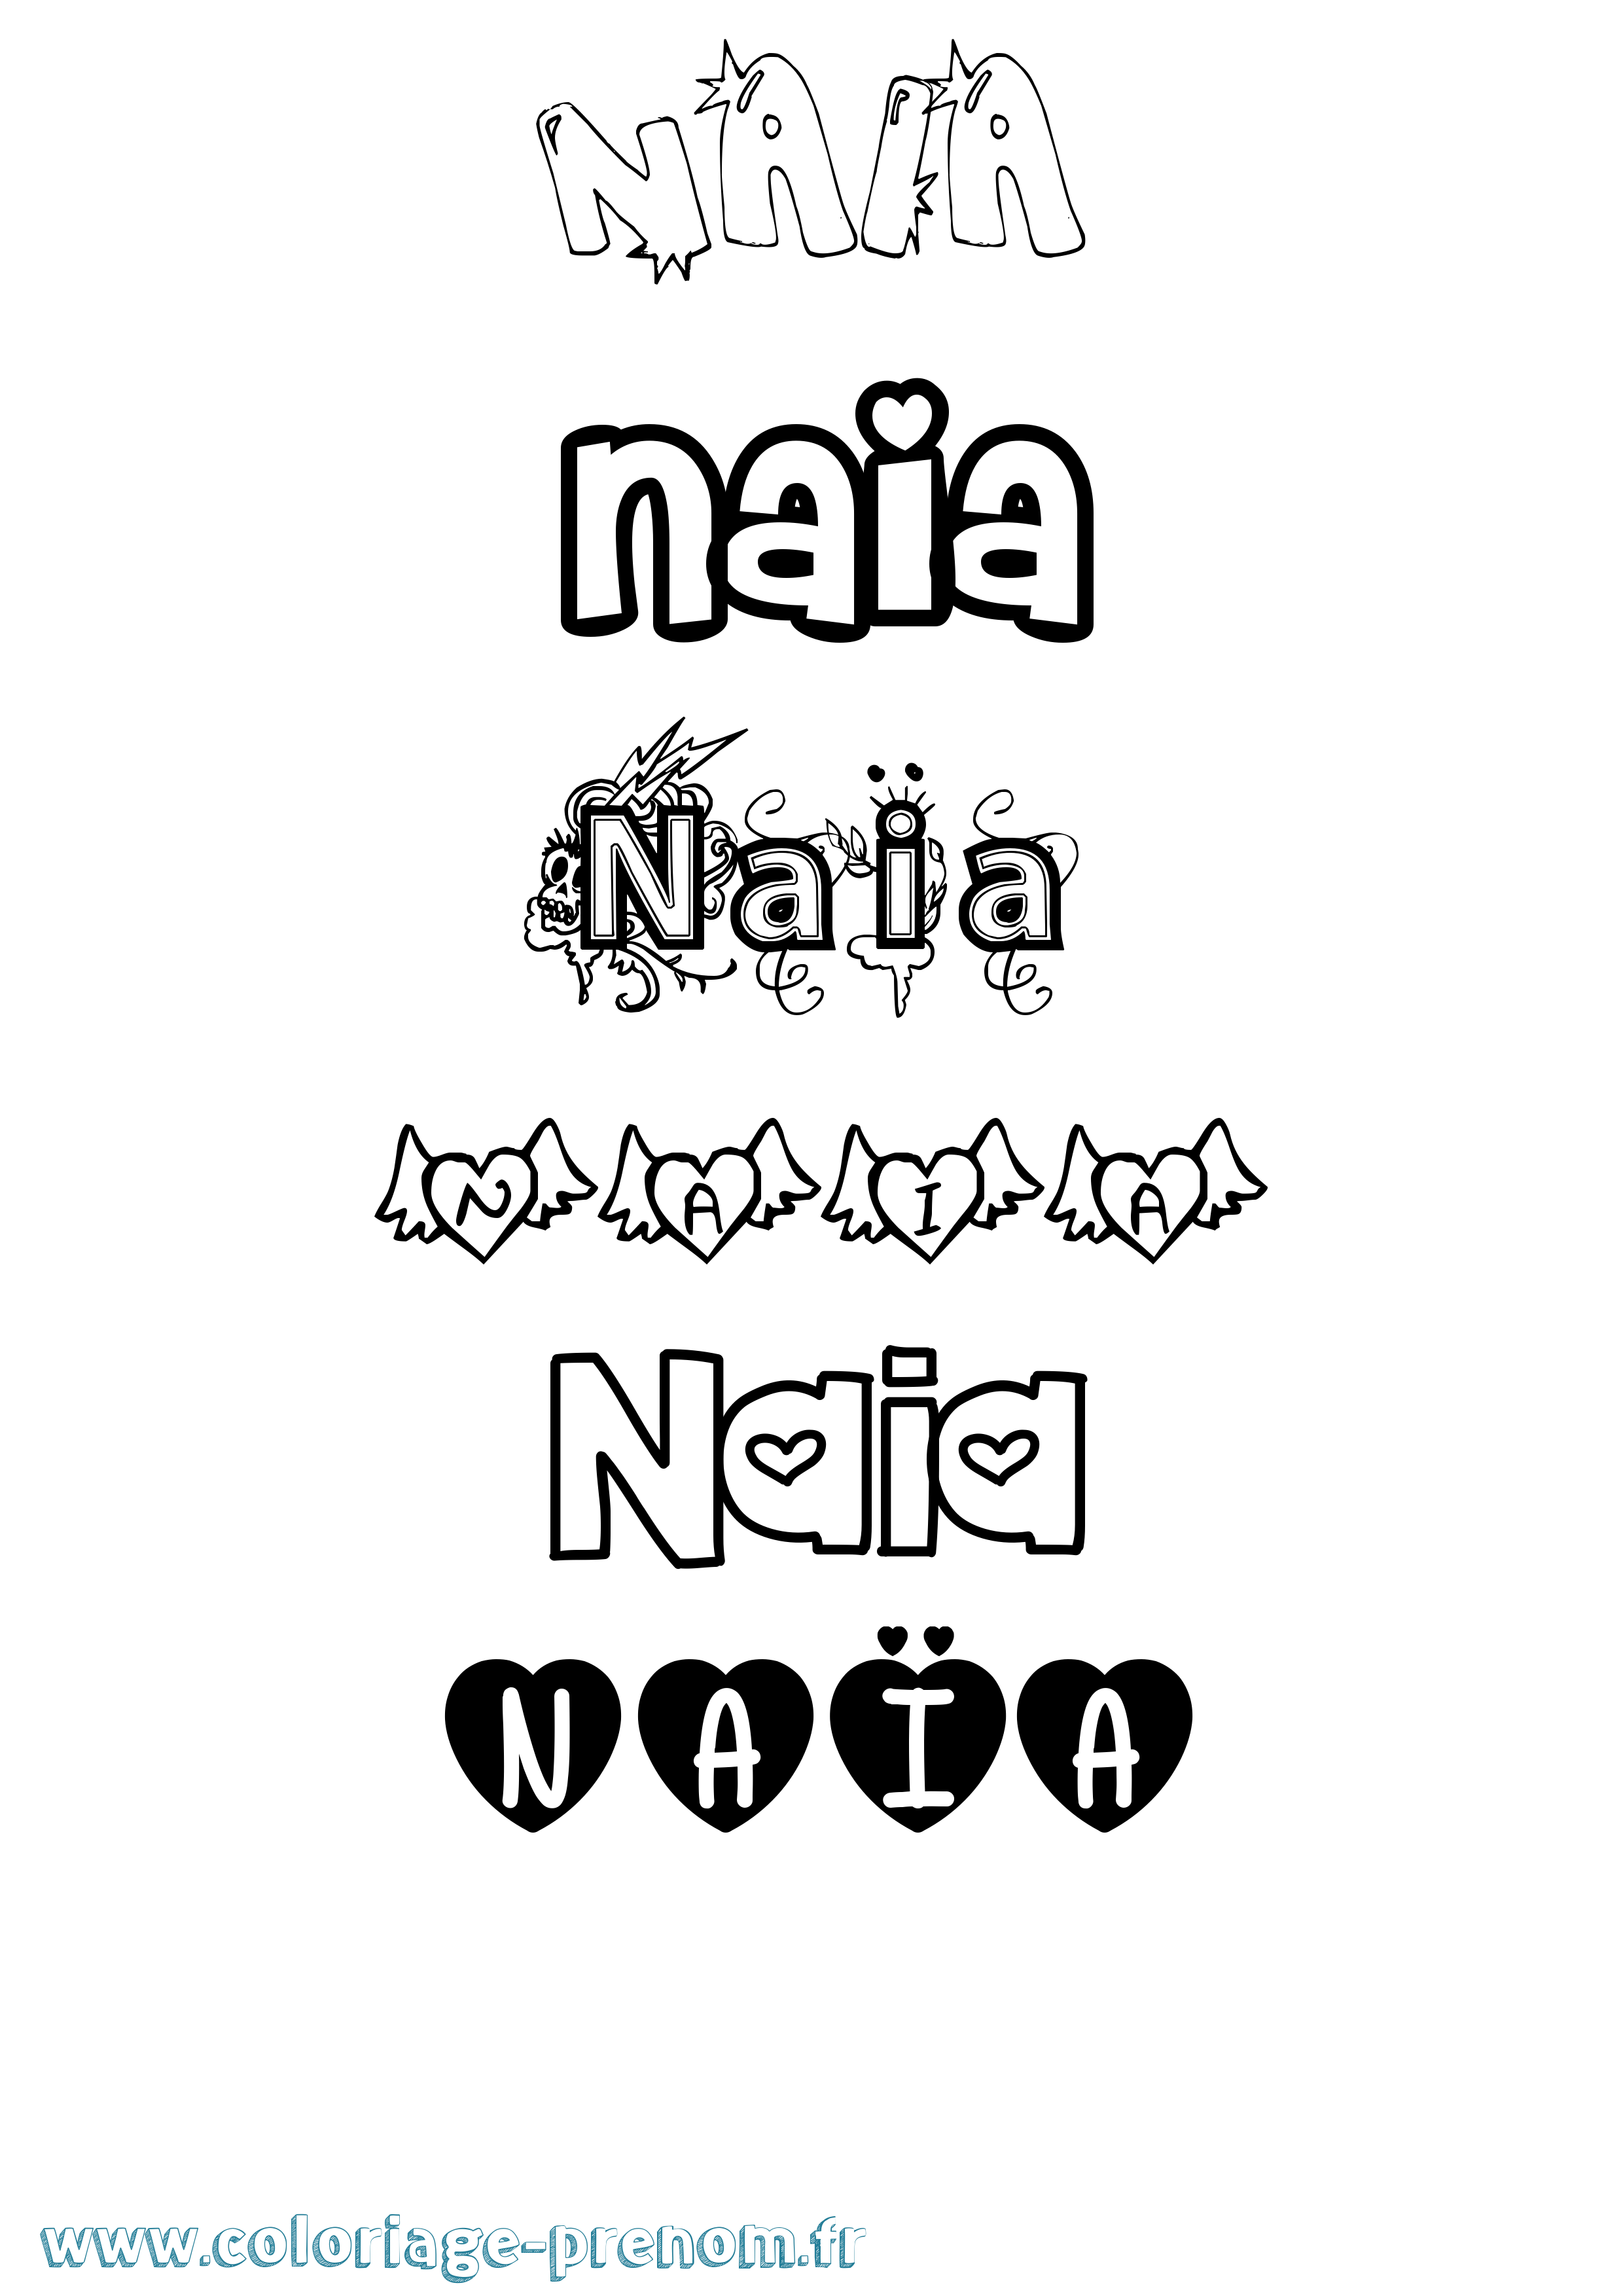 Coloriage prénom Naïa